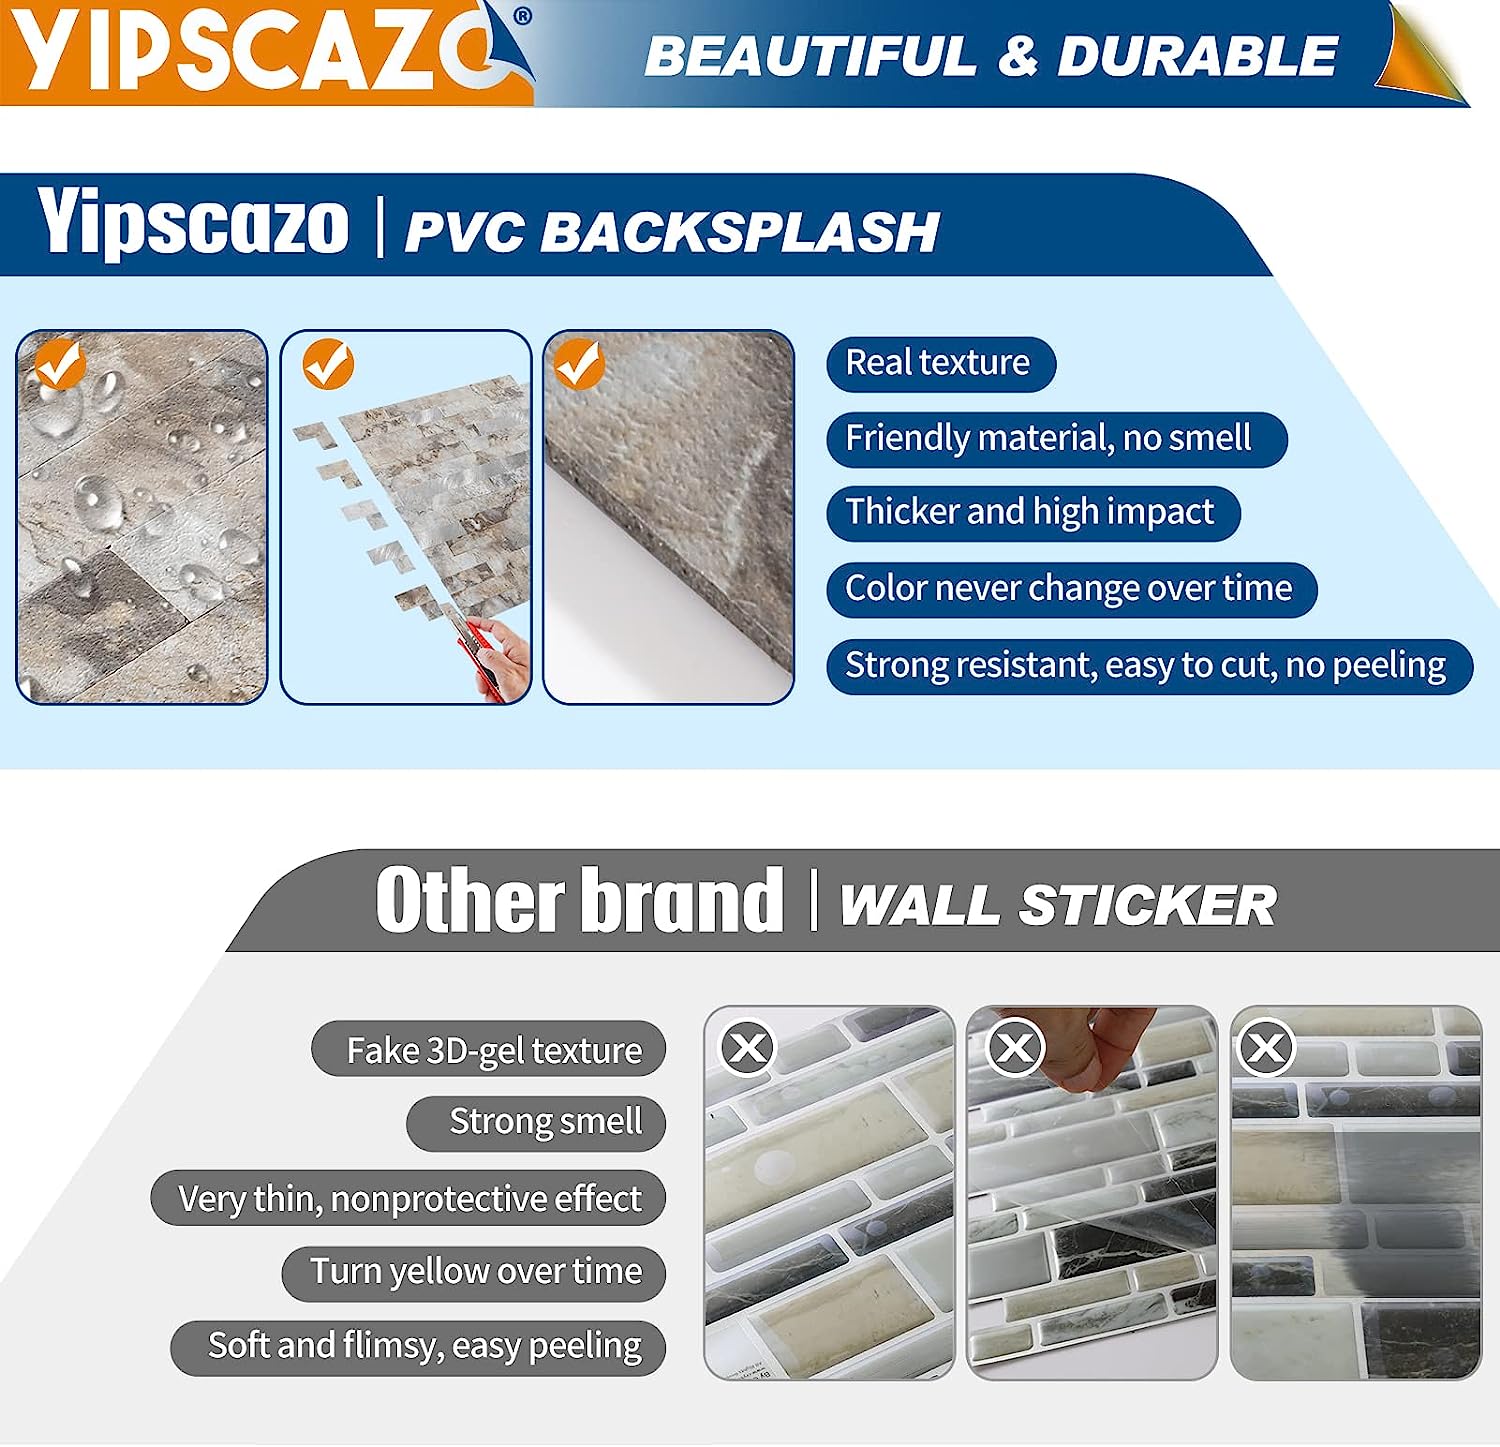 PVC kitchen backsplash tile composite image Linear Blend in Ecru